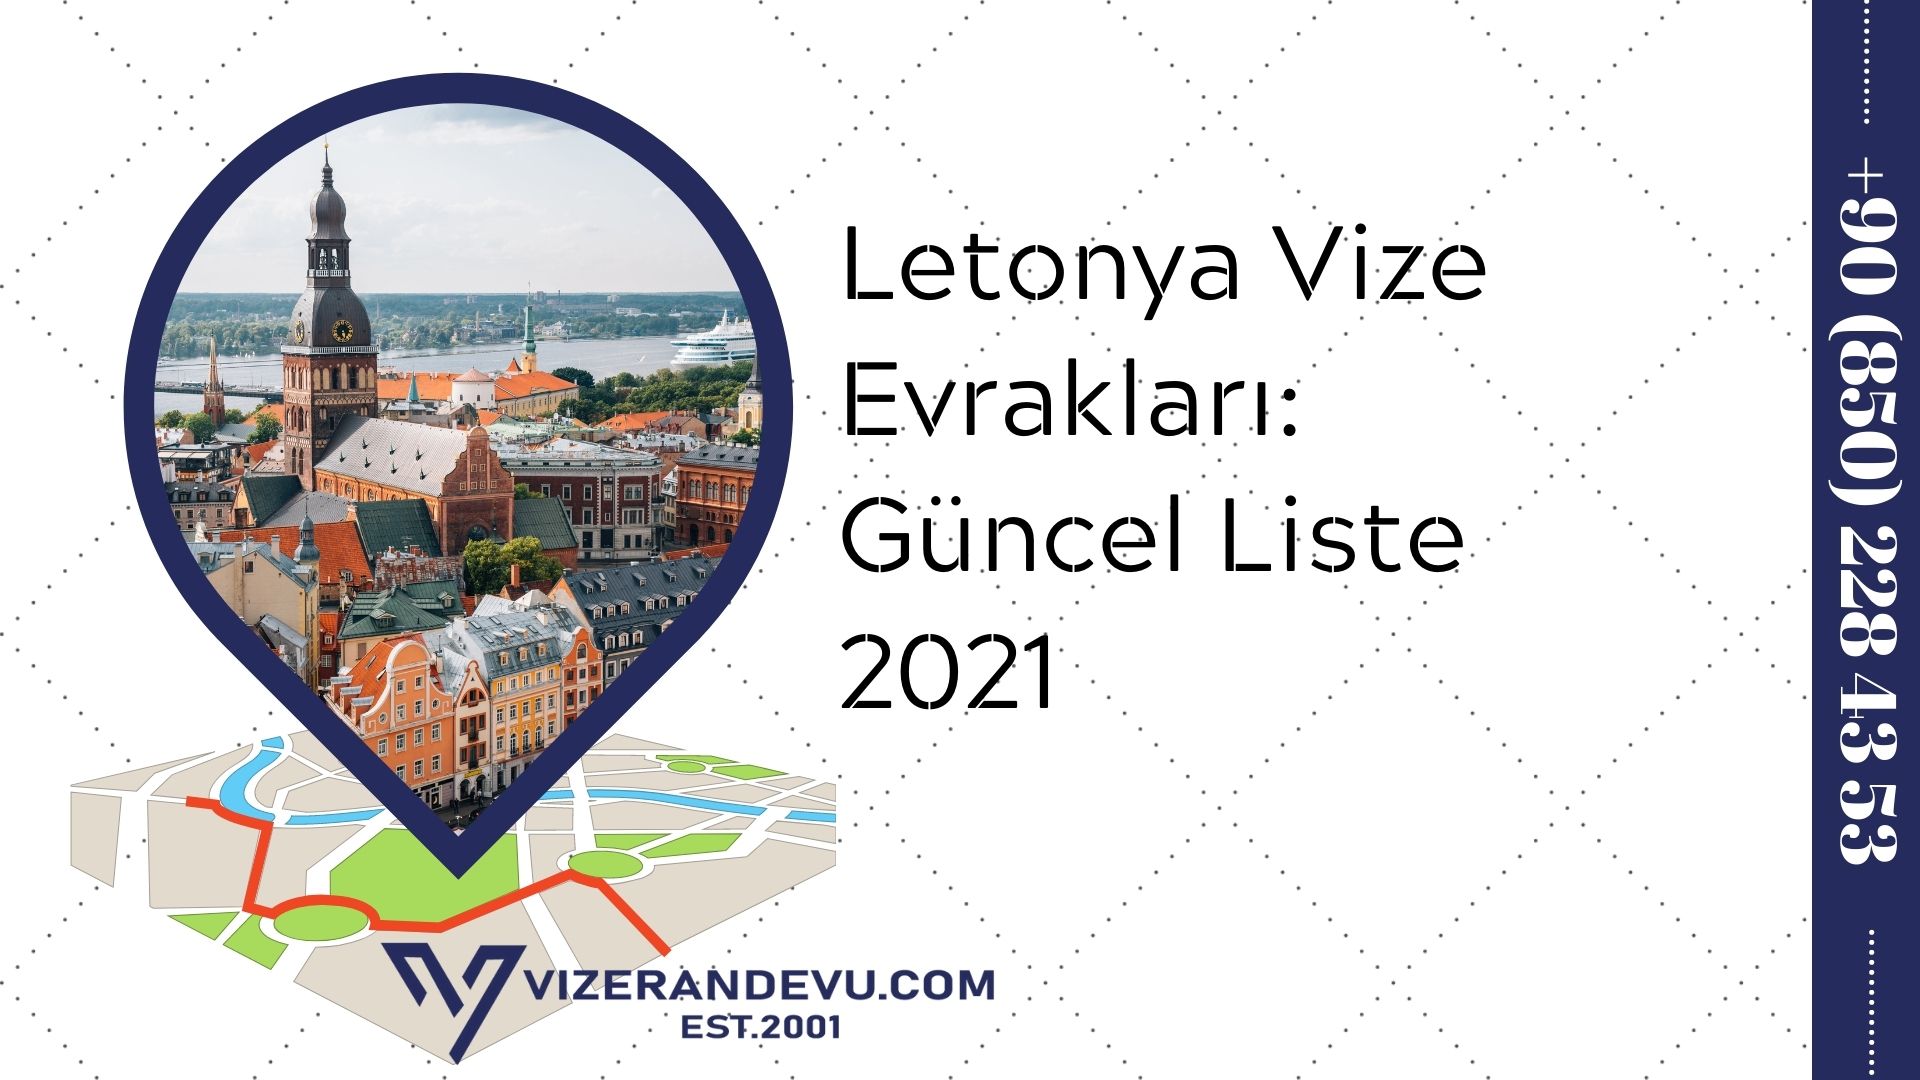 Letonya Vize Evrakları: Güncel Liste 2021